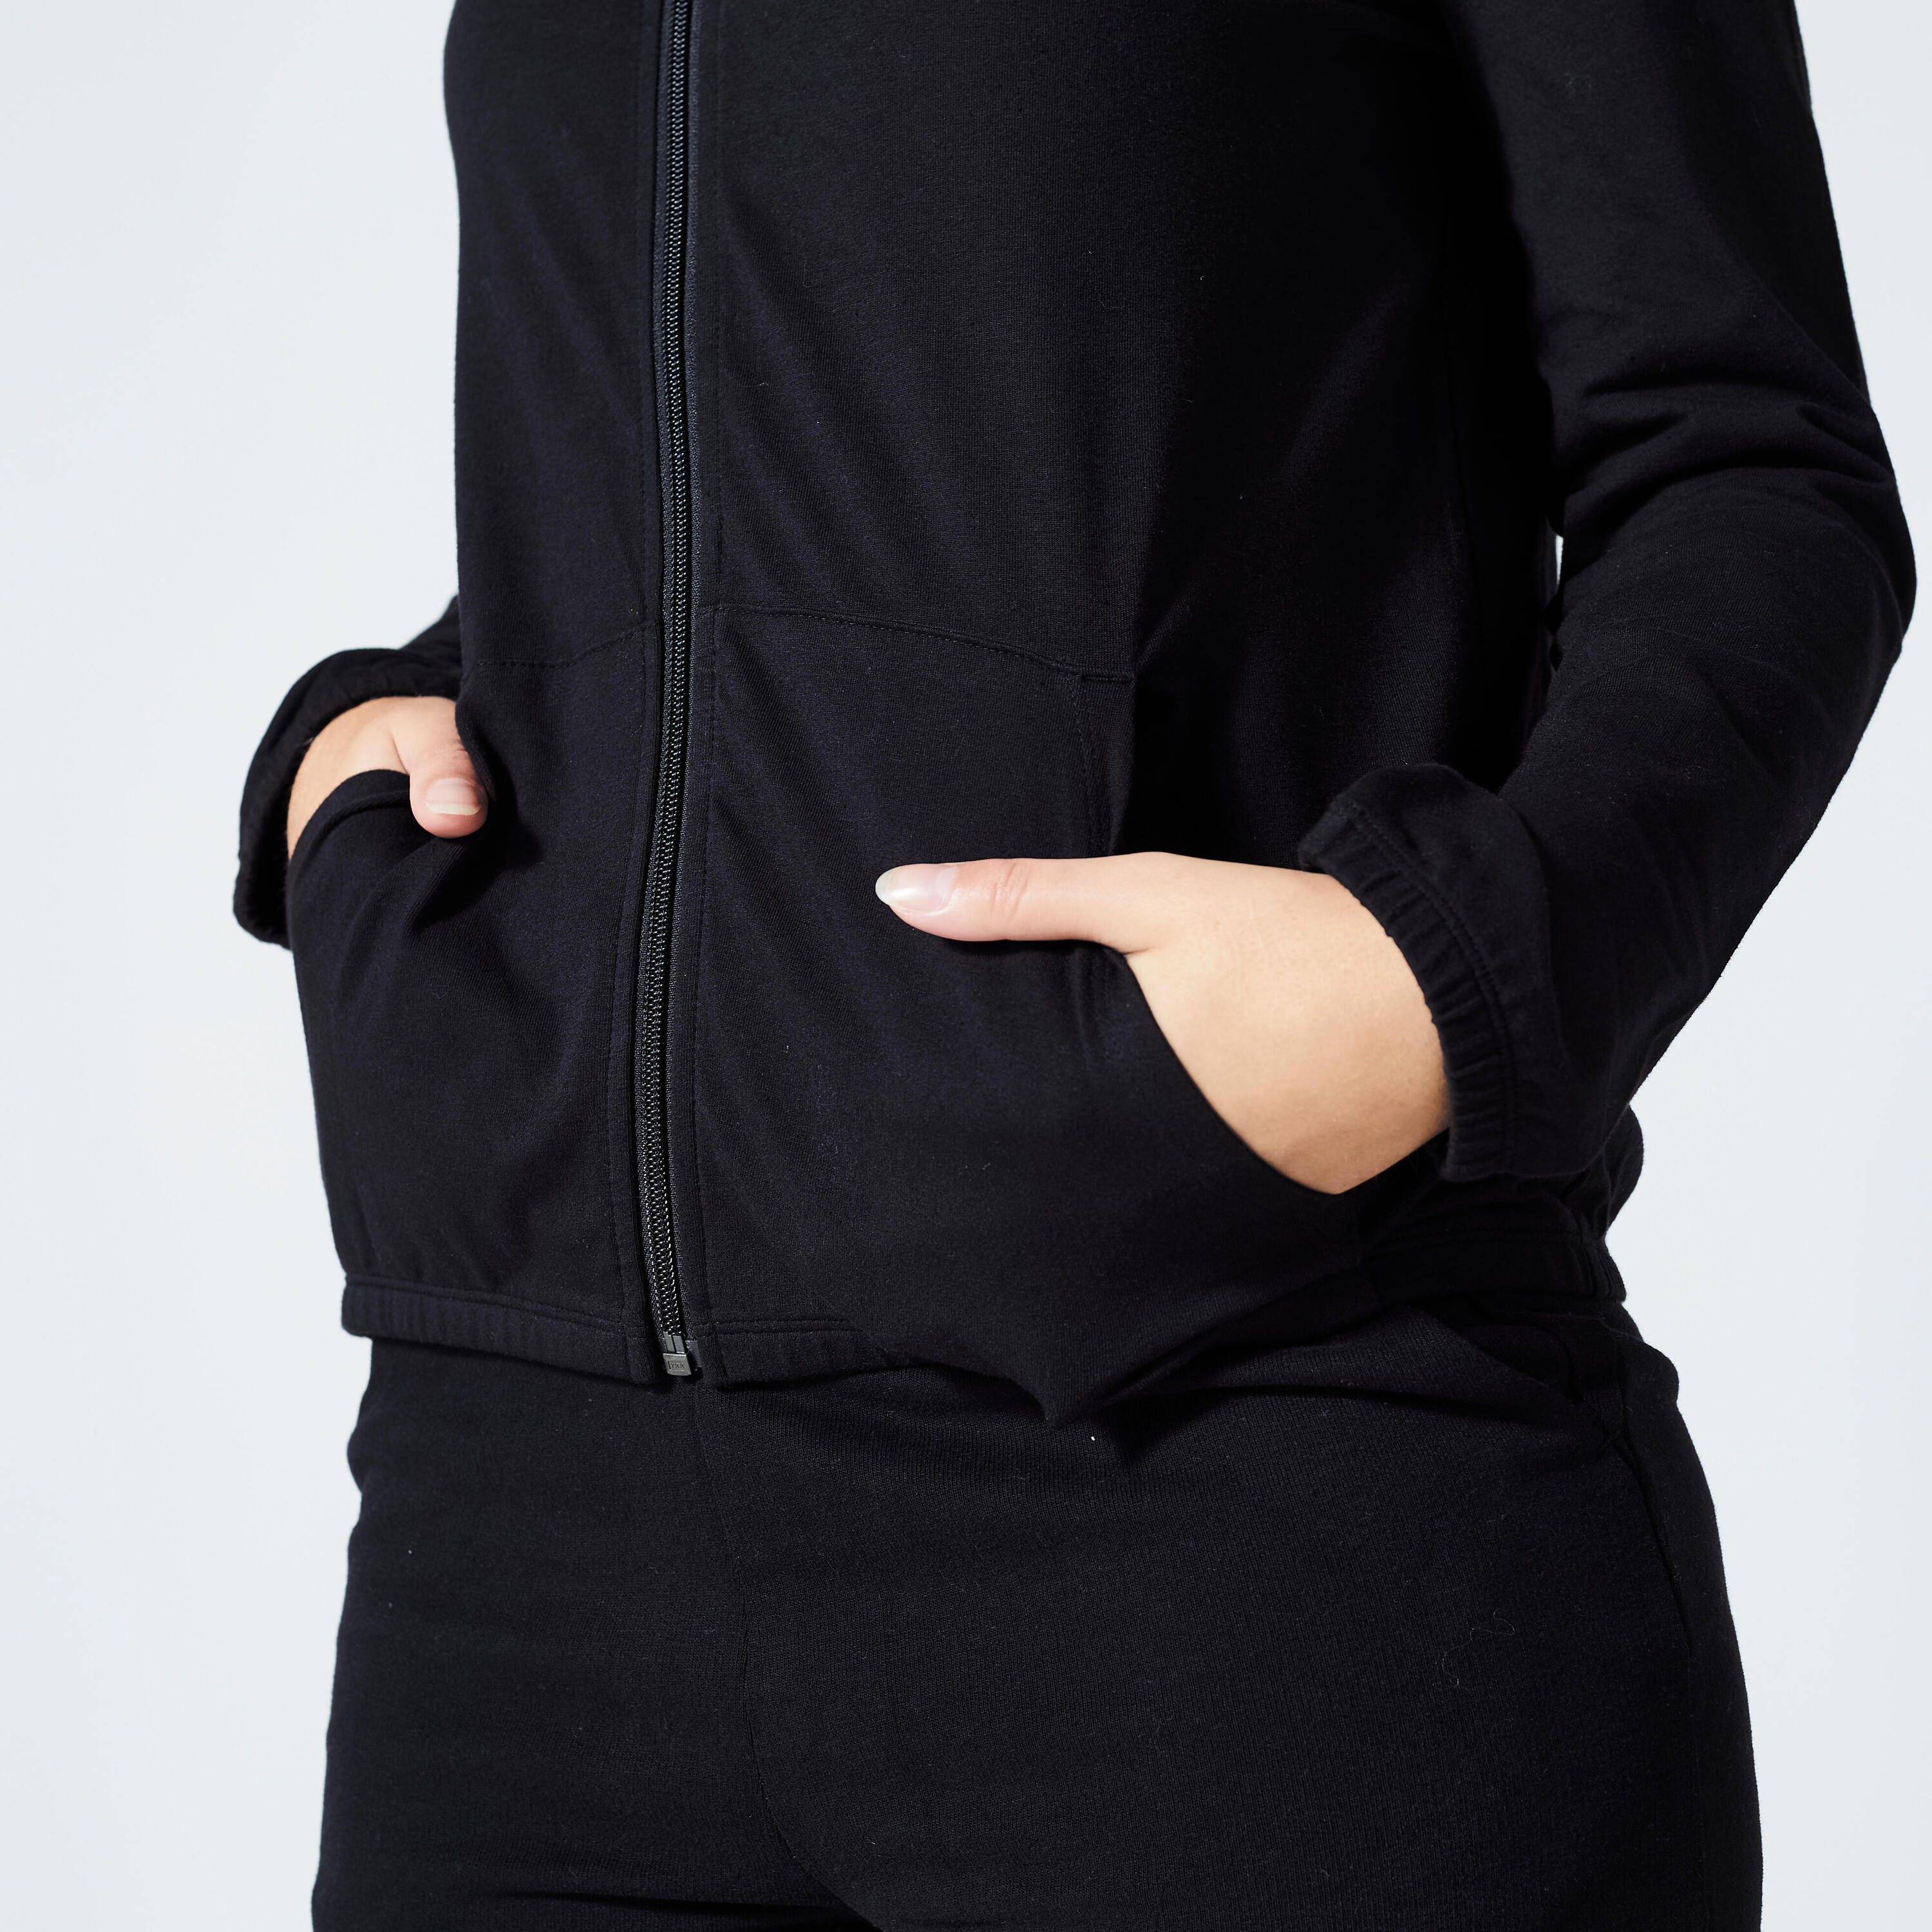 Women's Fitness Zip-Up Sweatshirt 100 - Black 4/5